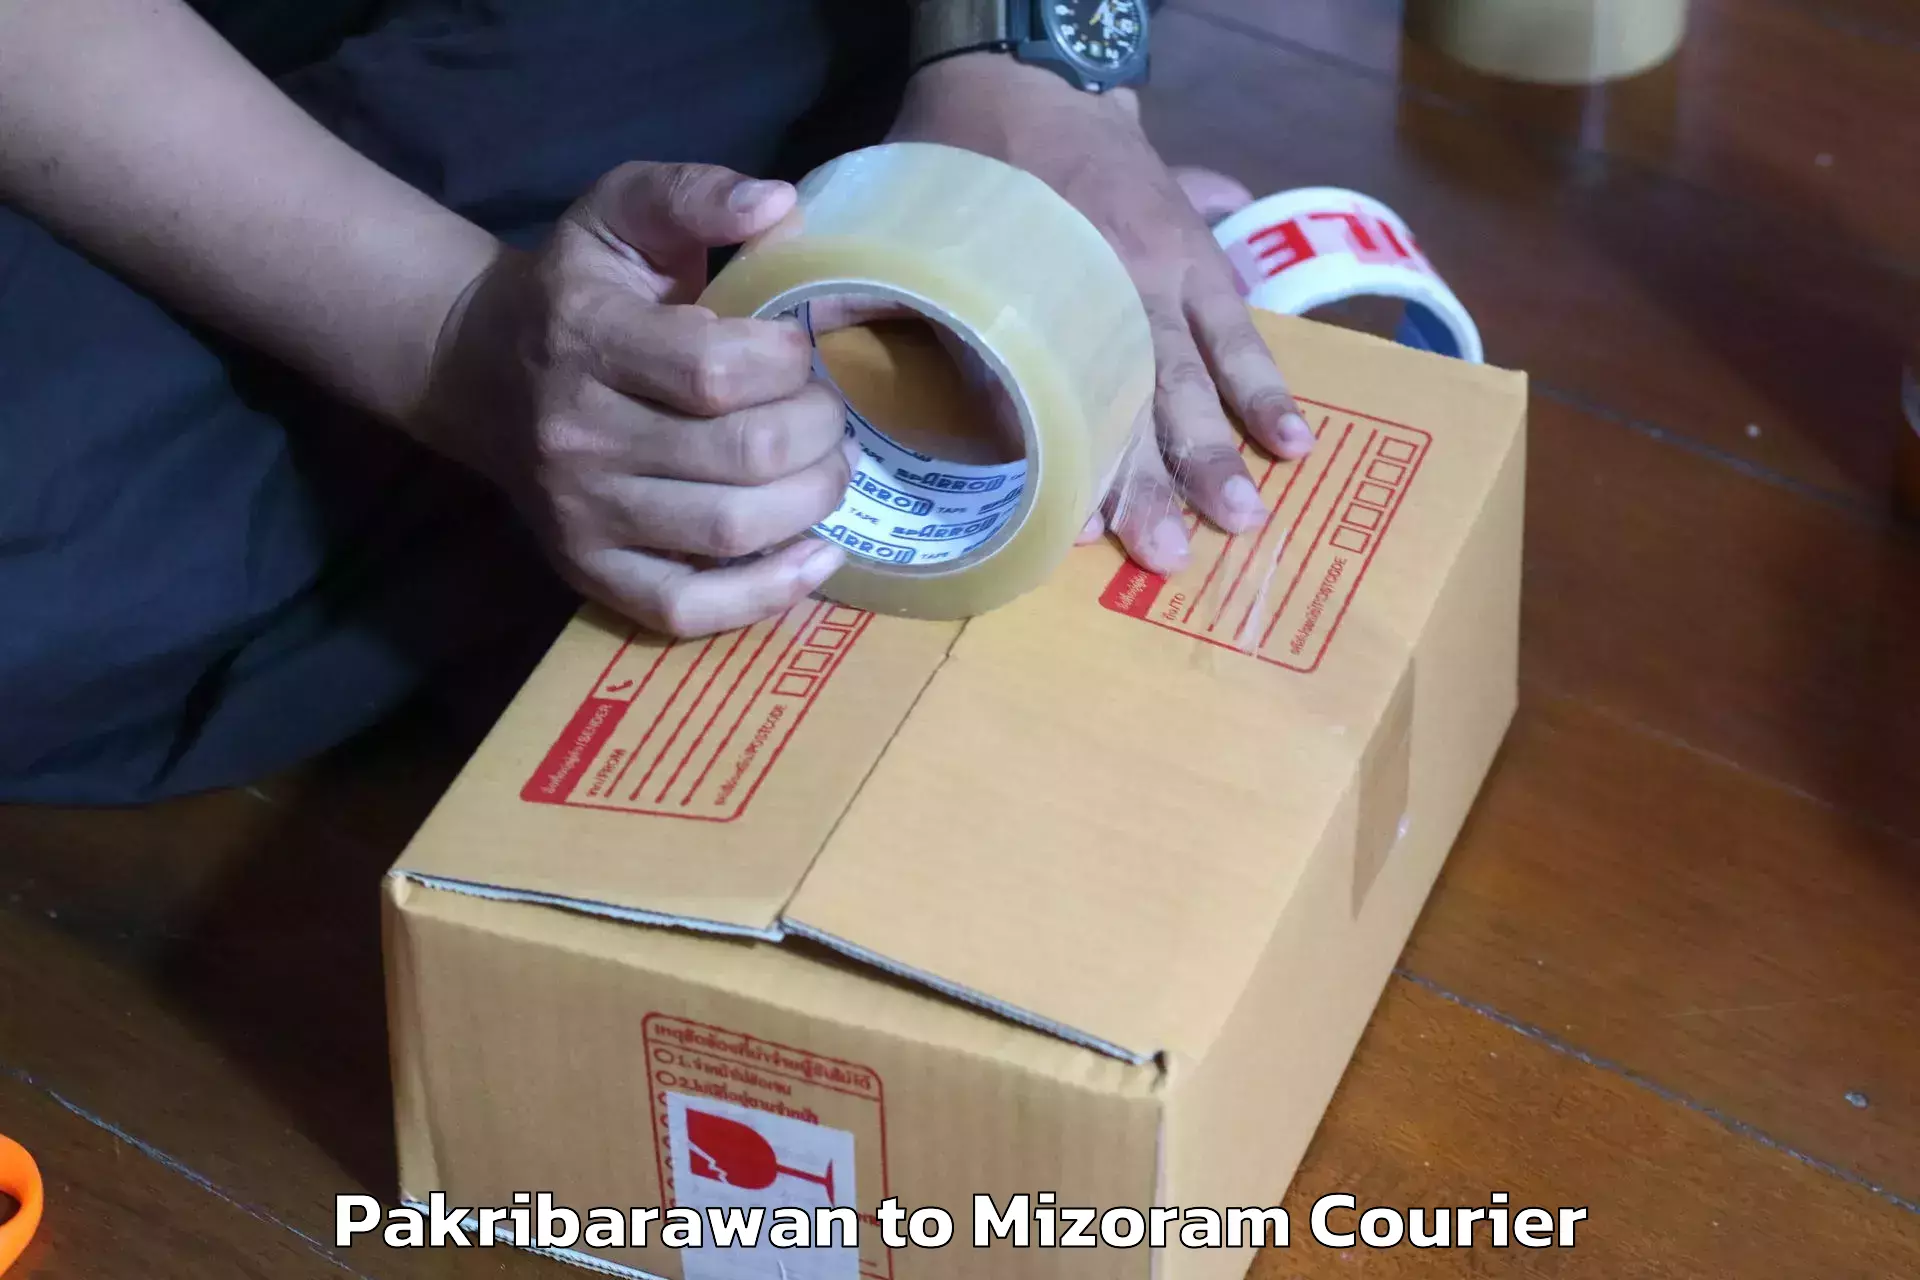 Efficient moving company Pakribarawan to Mizoram